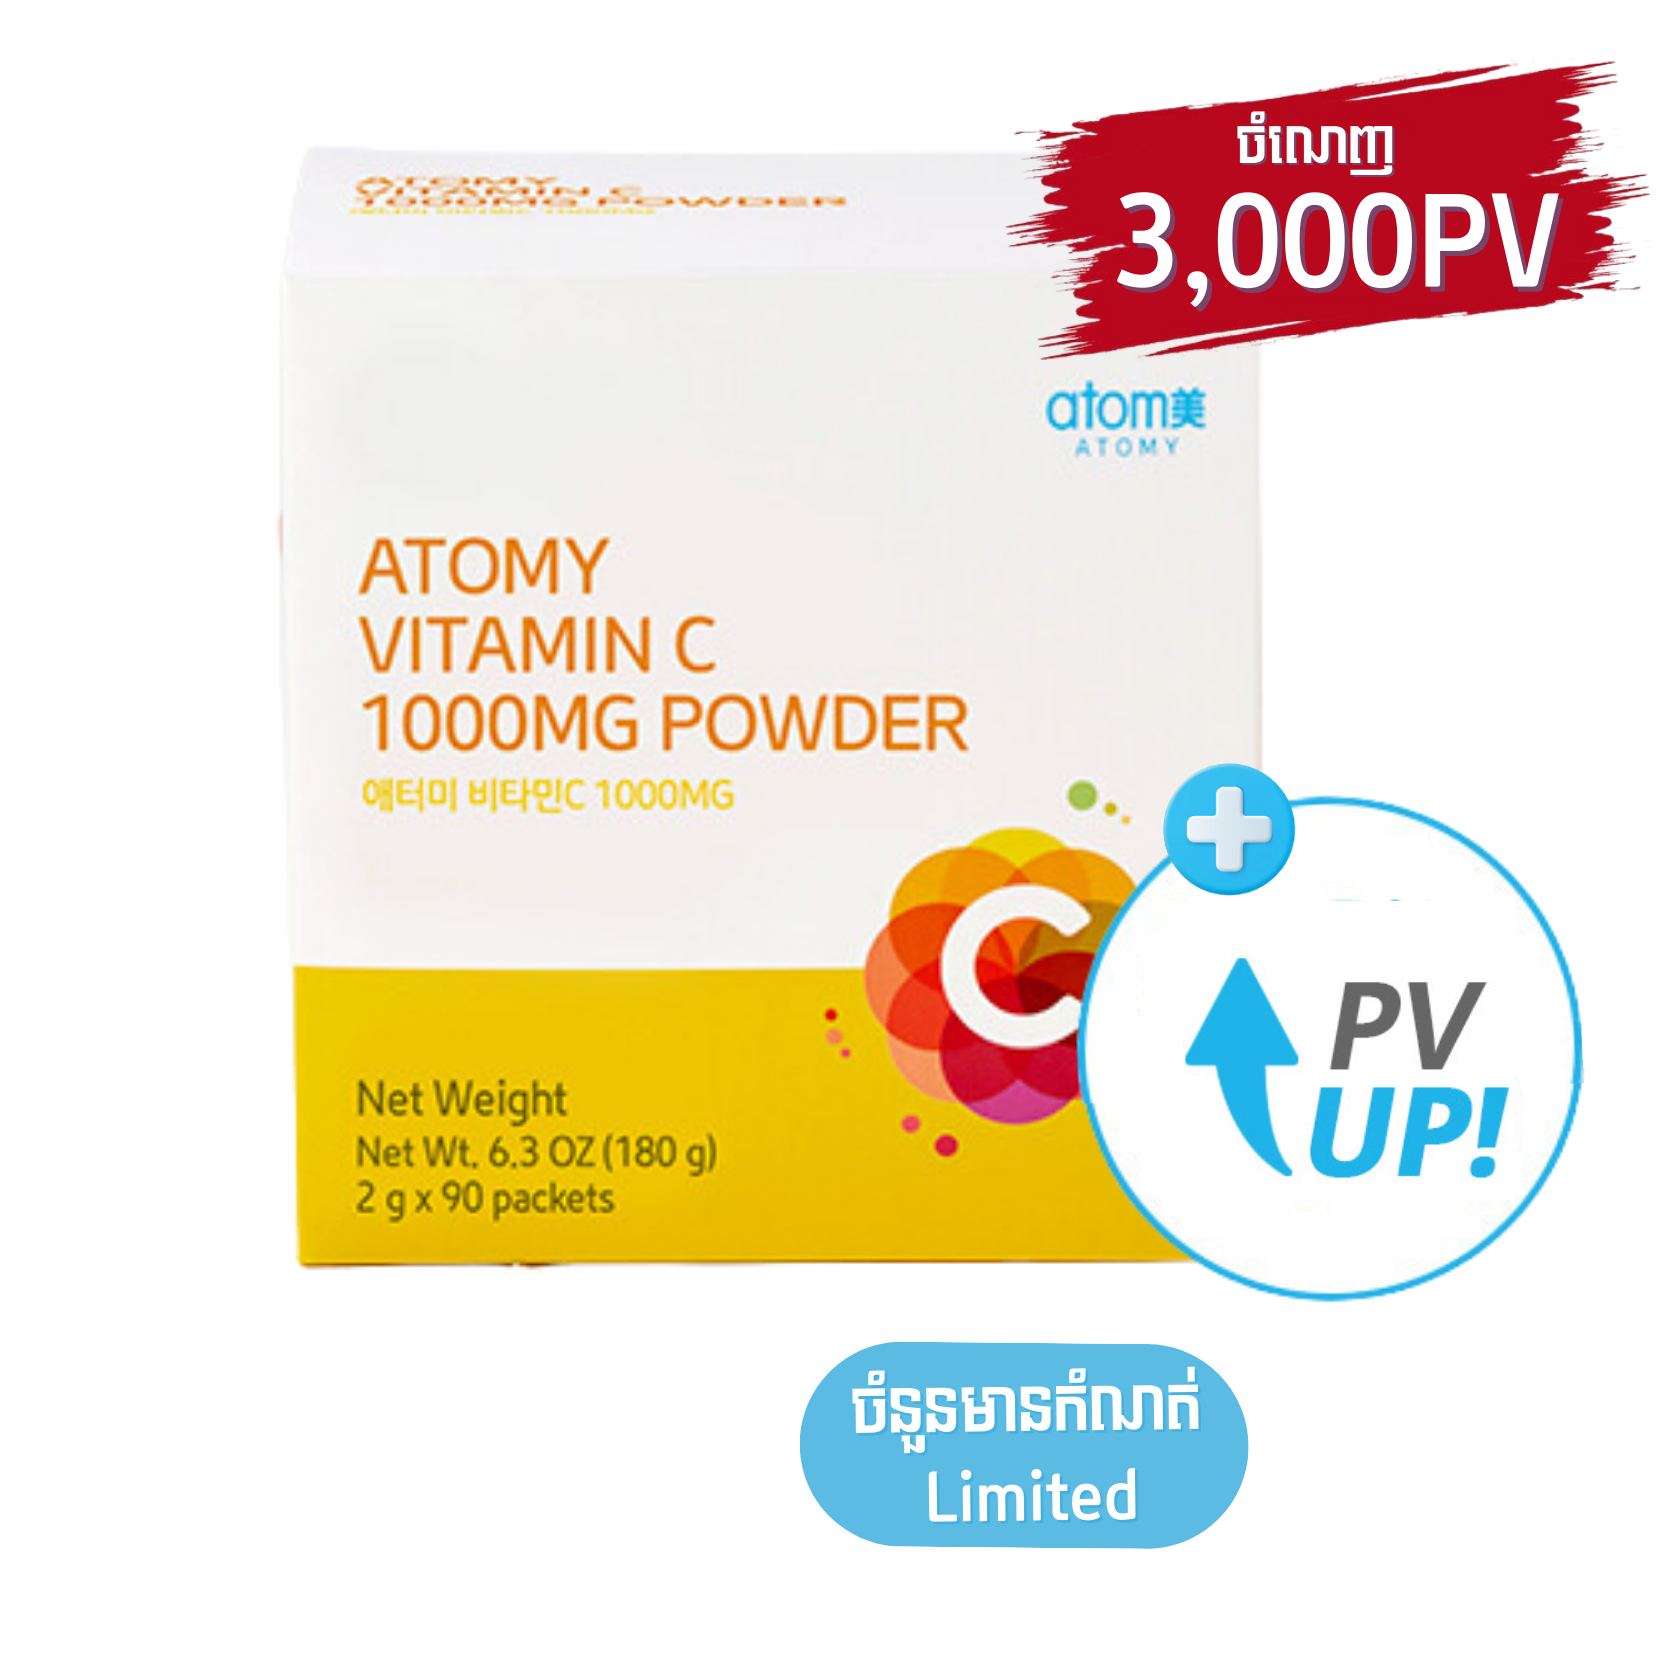 Atomy Color Vitamin C Powder (1000mg)